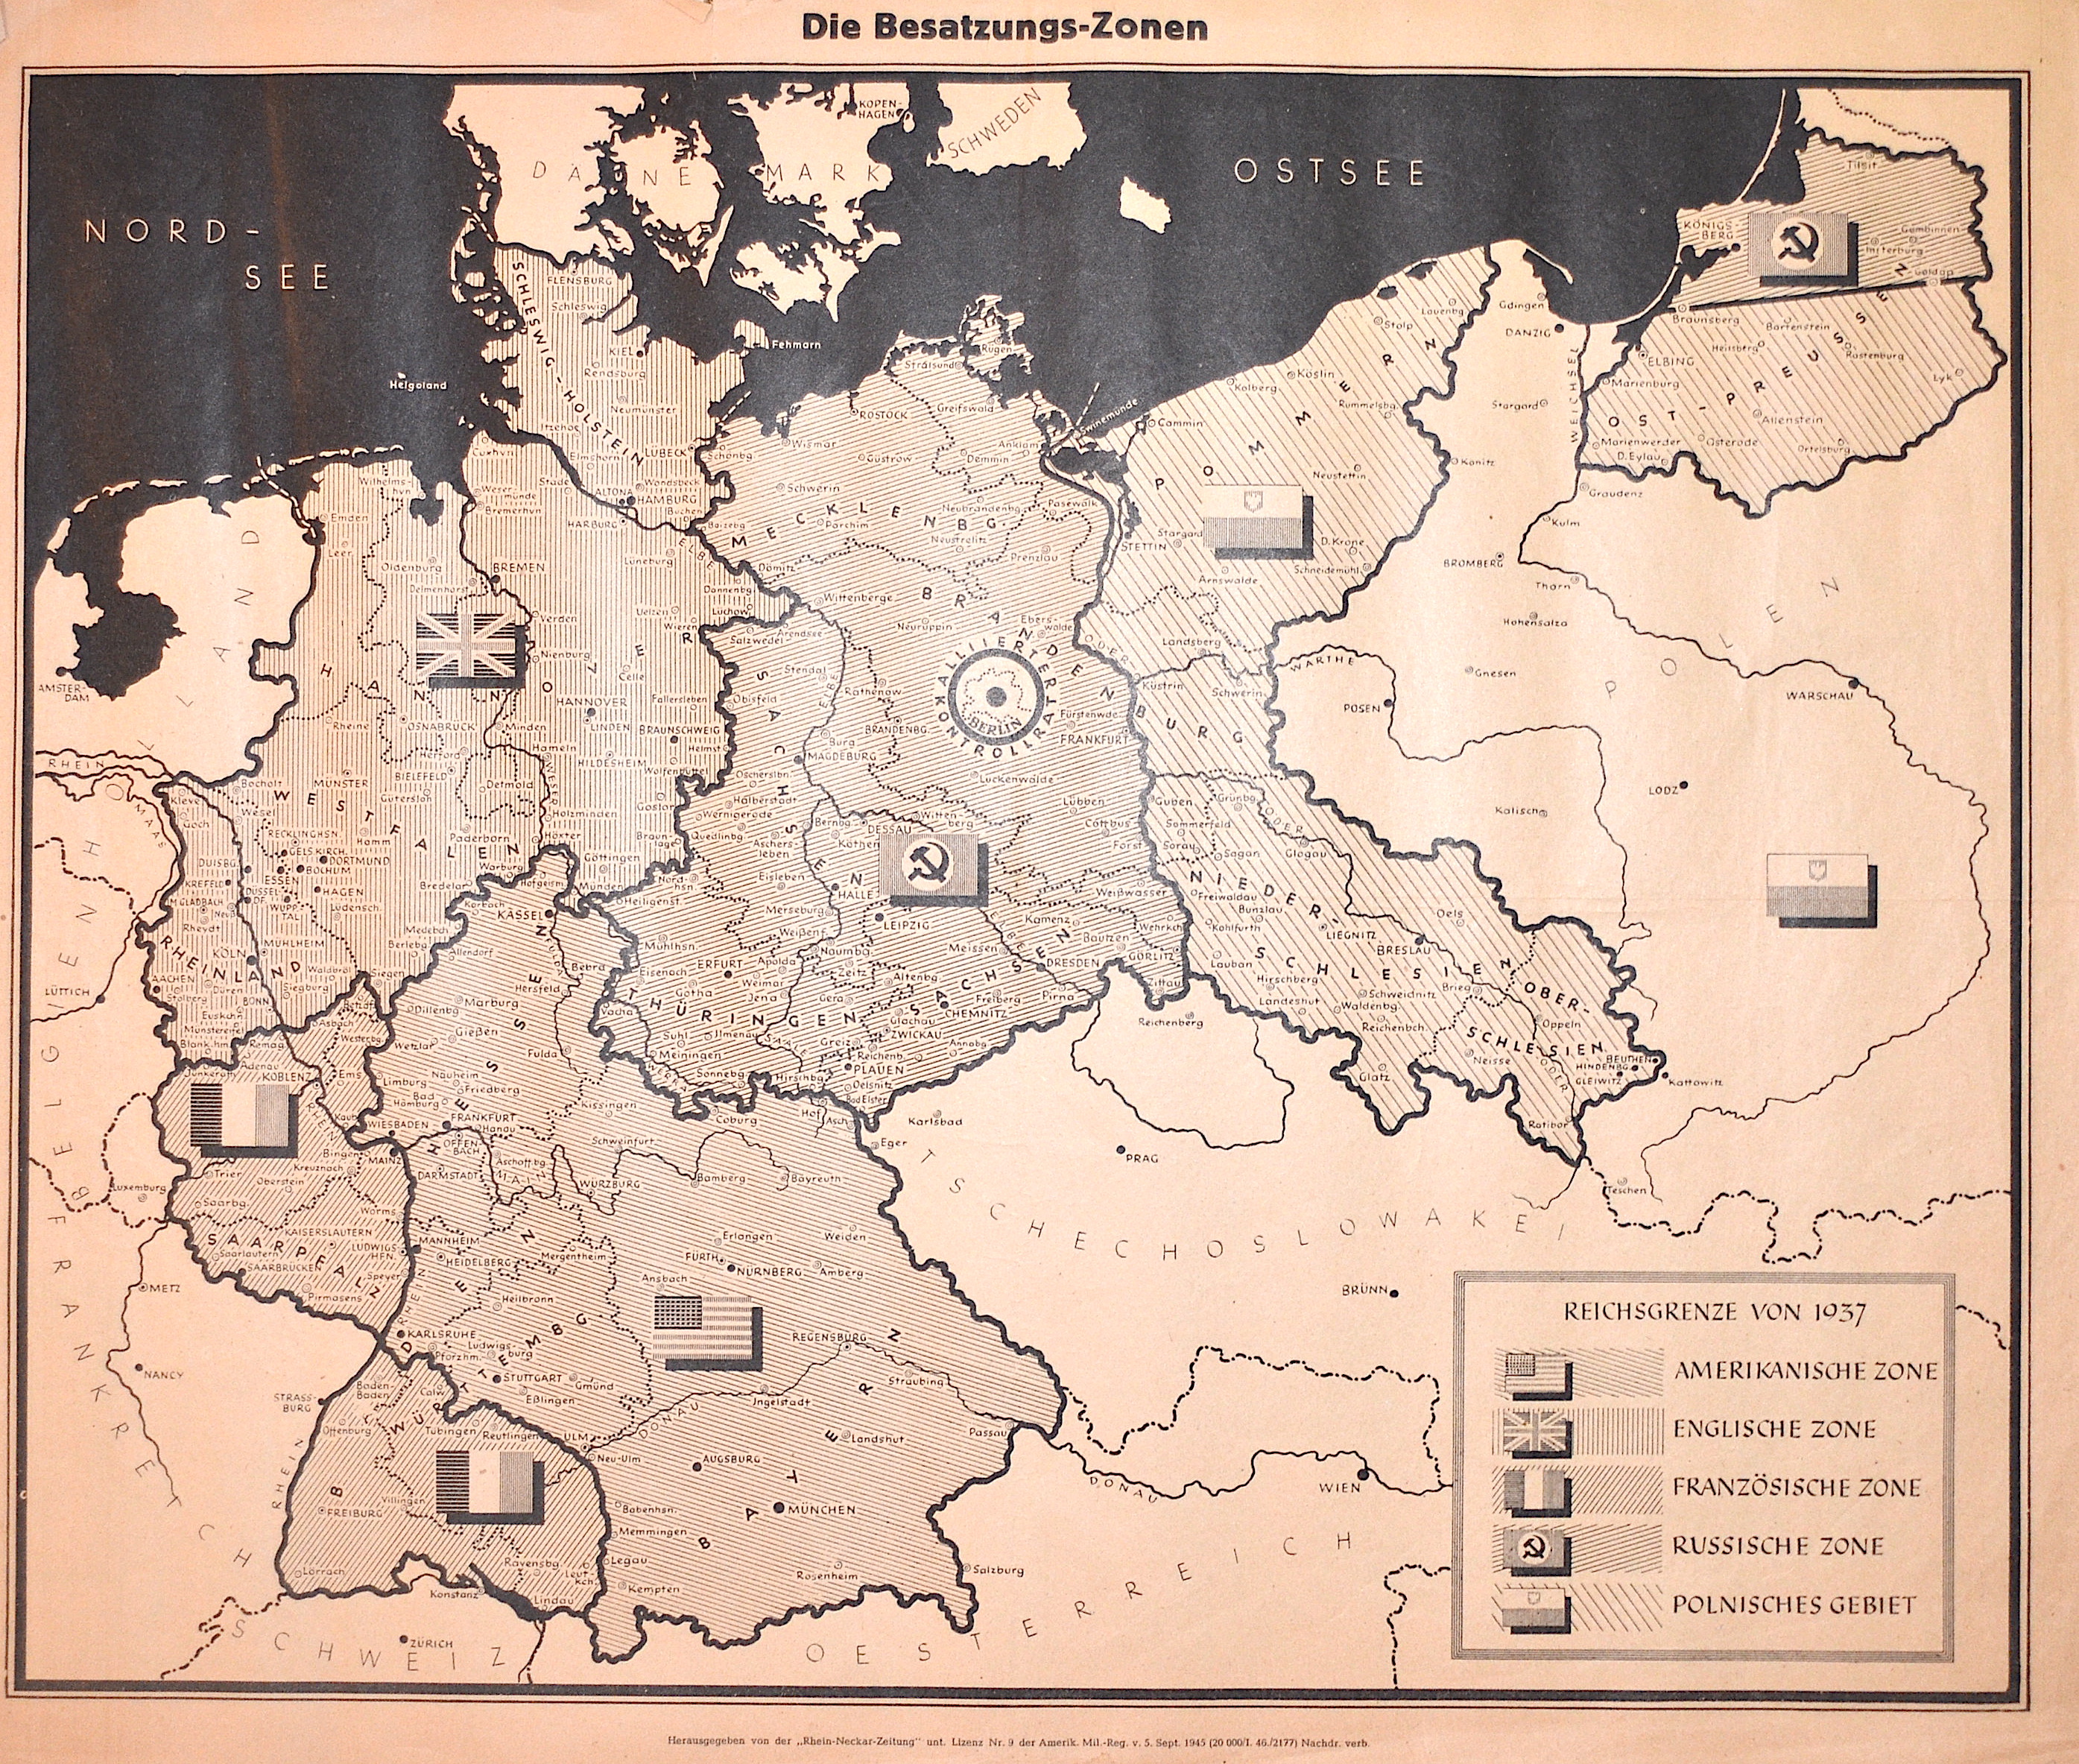 Rhein/Neckar-Zeitung  Die Besatzungs-Zone